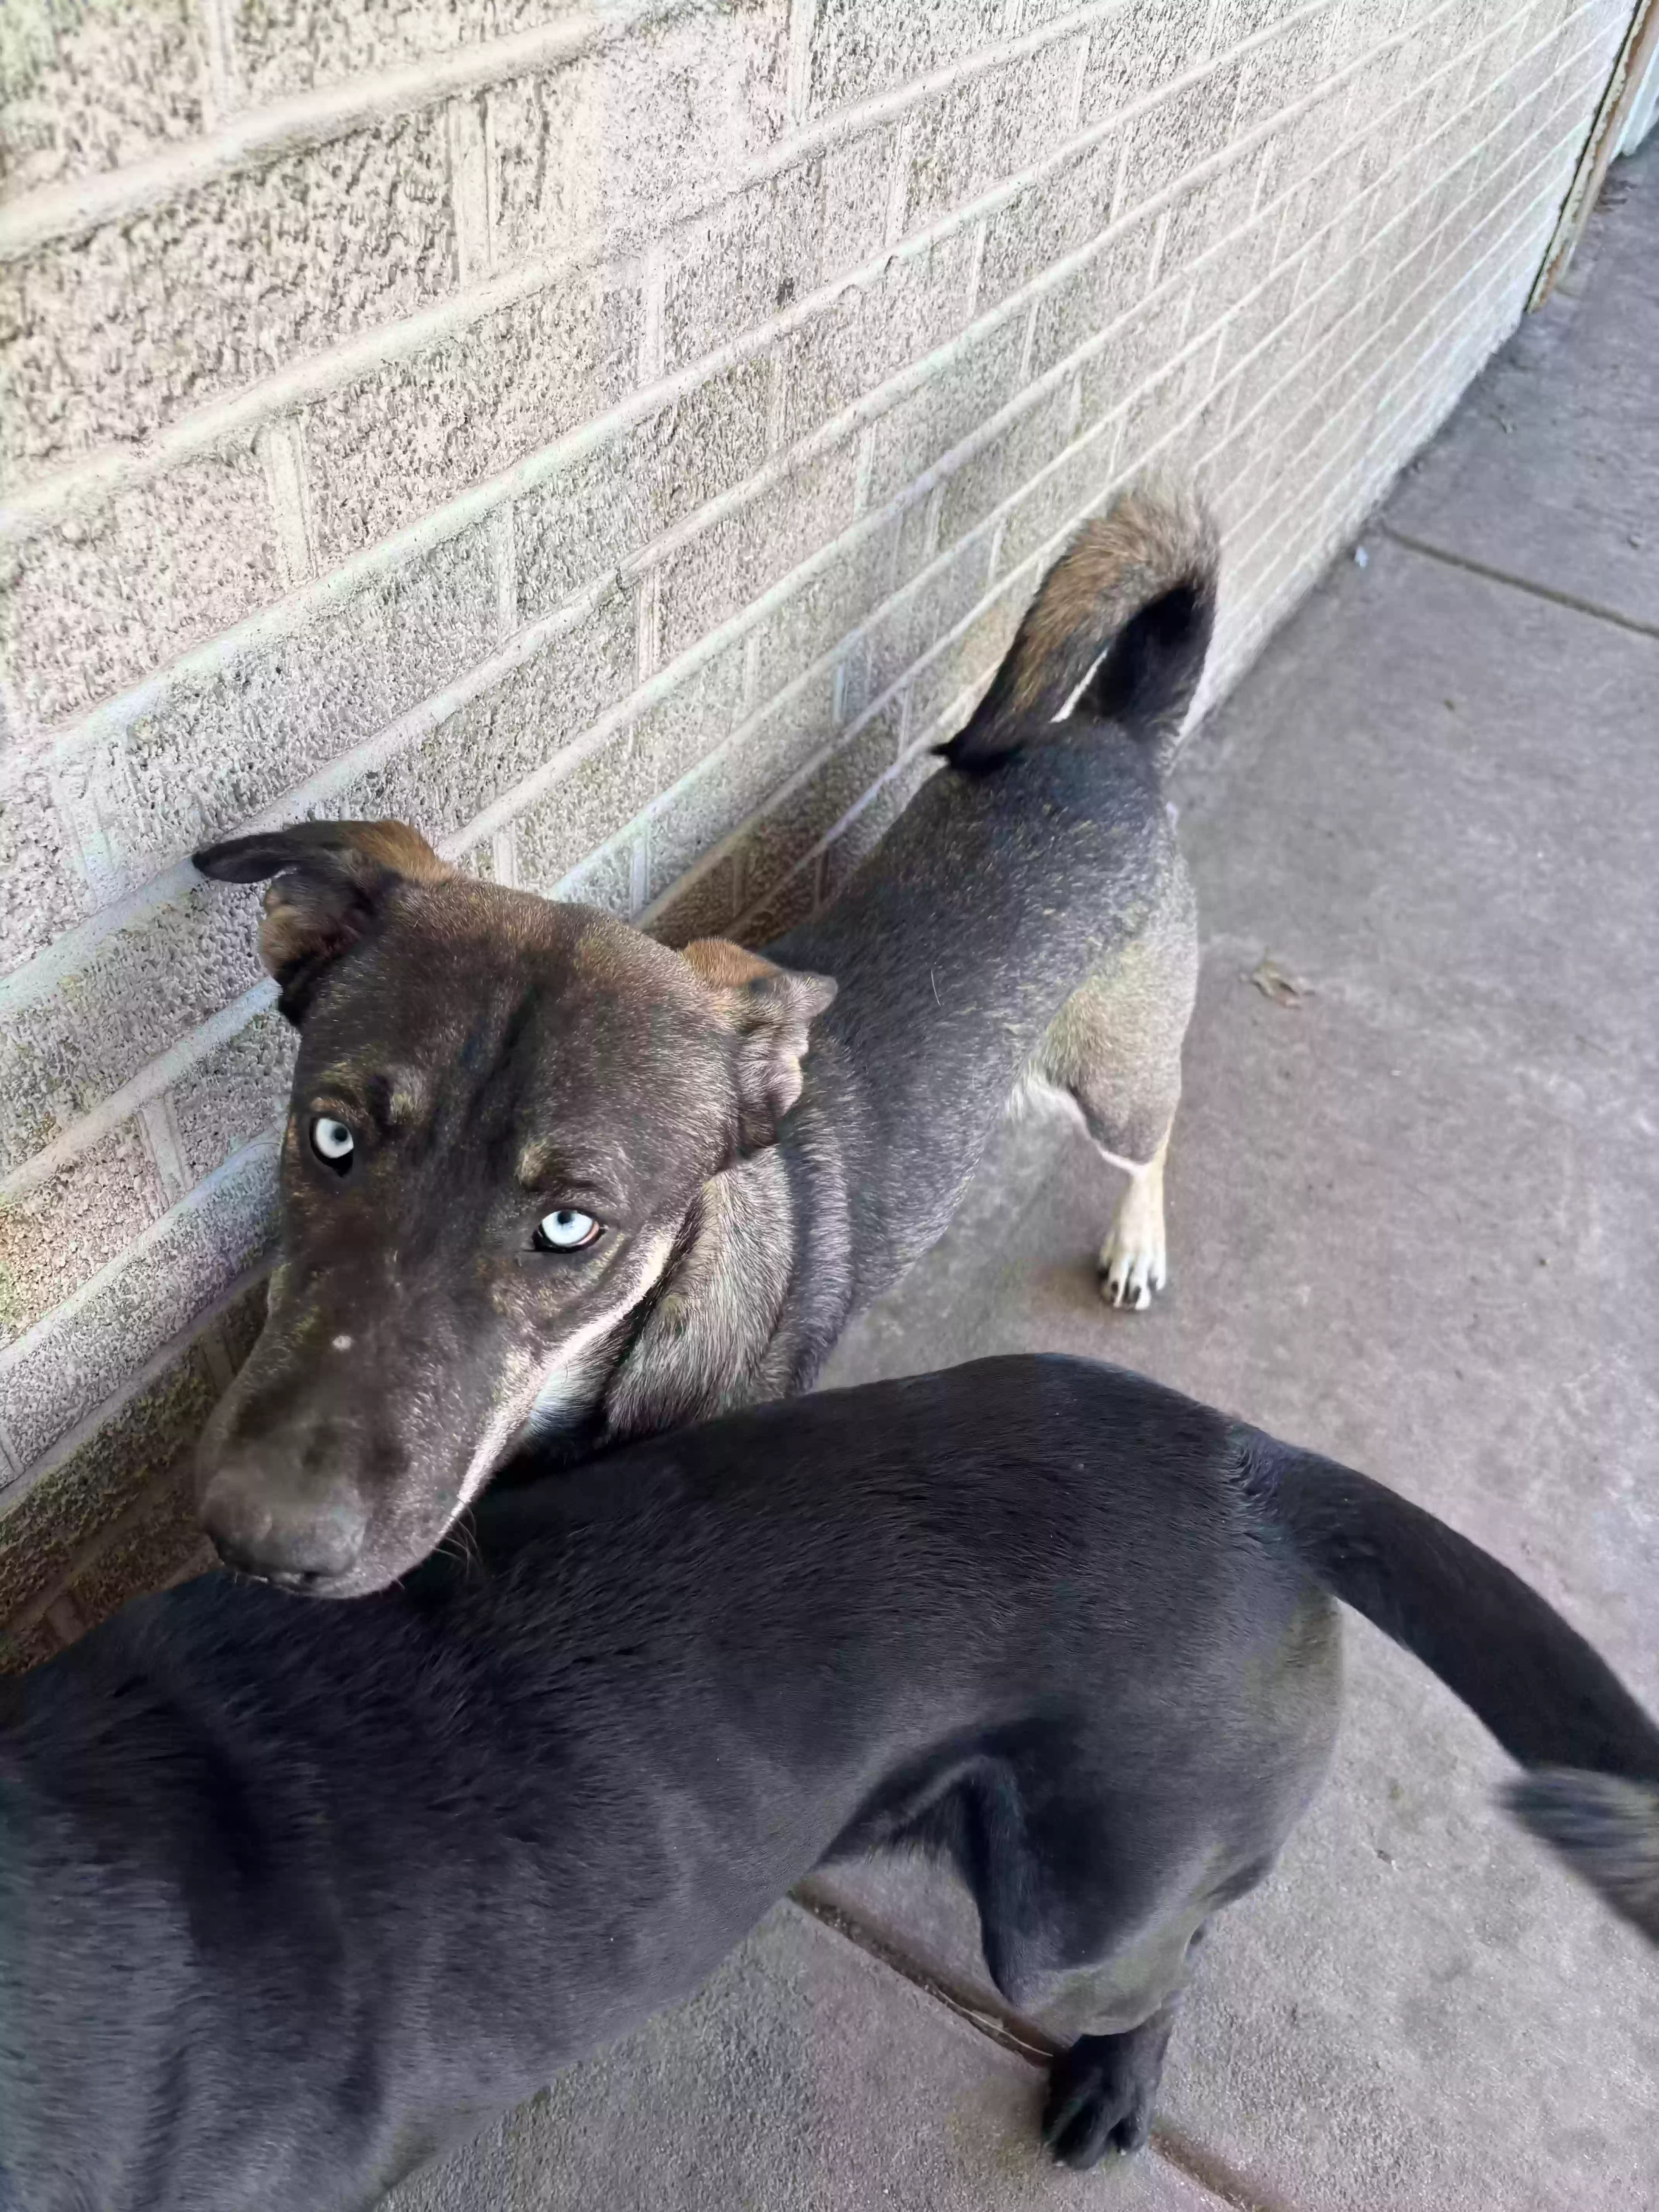 adoptable Dog in Wichita,KS named River